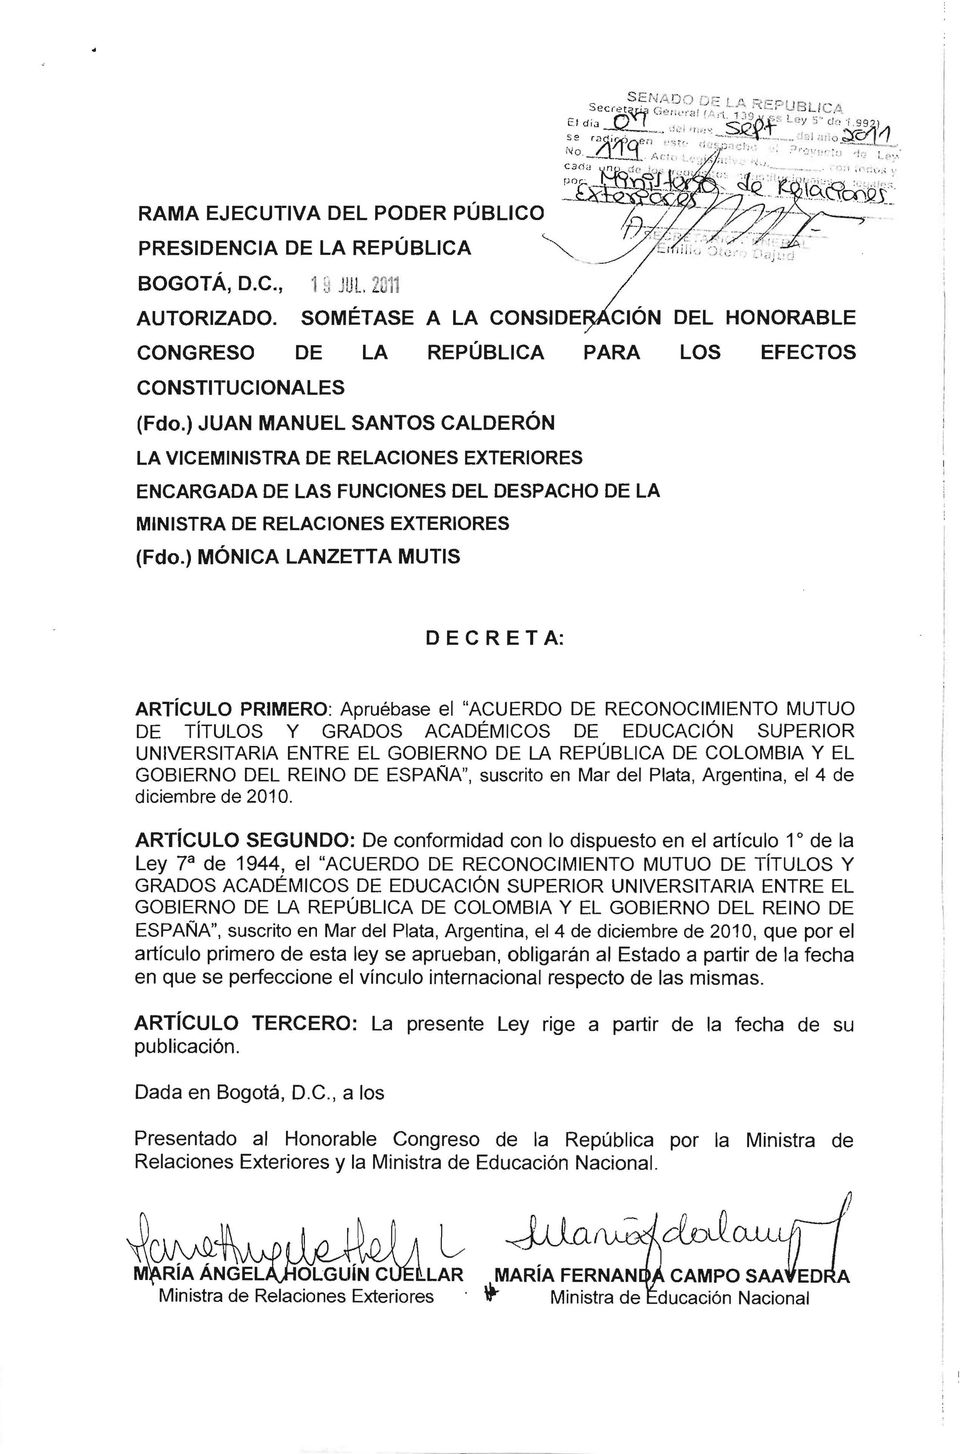 REPÚBLICA DE COLOMBIA Y El GOBIERNO DEL REINO DE ESPAÑA" suscrito en Mar del Plata Argentina el 4 de diciembre de 2010.